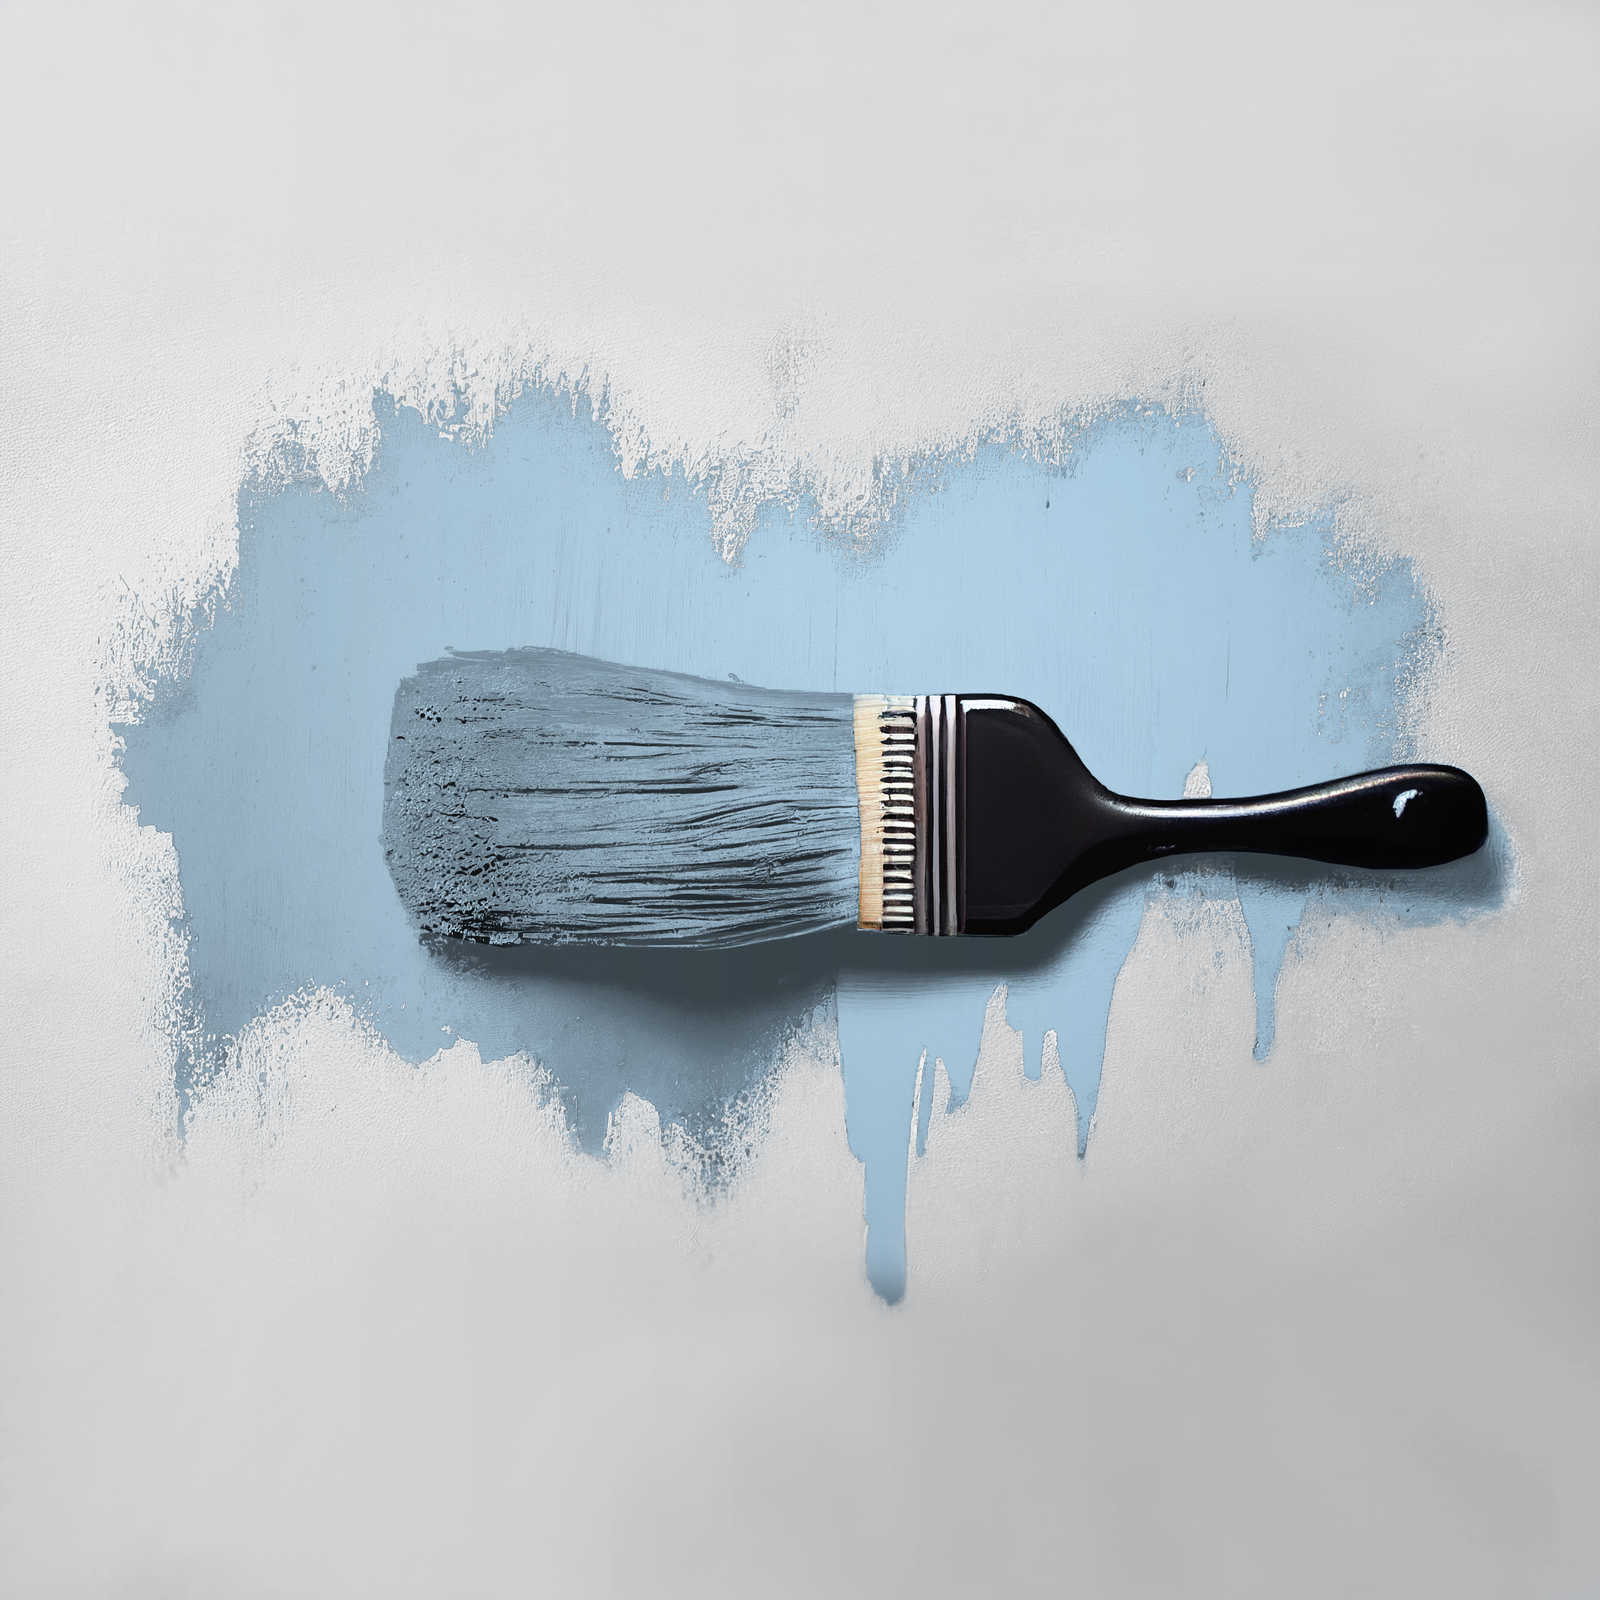             Pintura mural TCK3003 »Soft Sky« en azul cielo amistoso – 5,0 litro
        